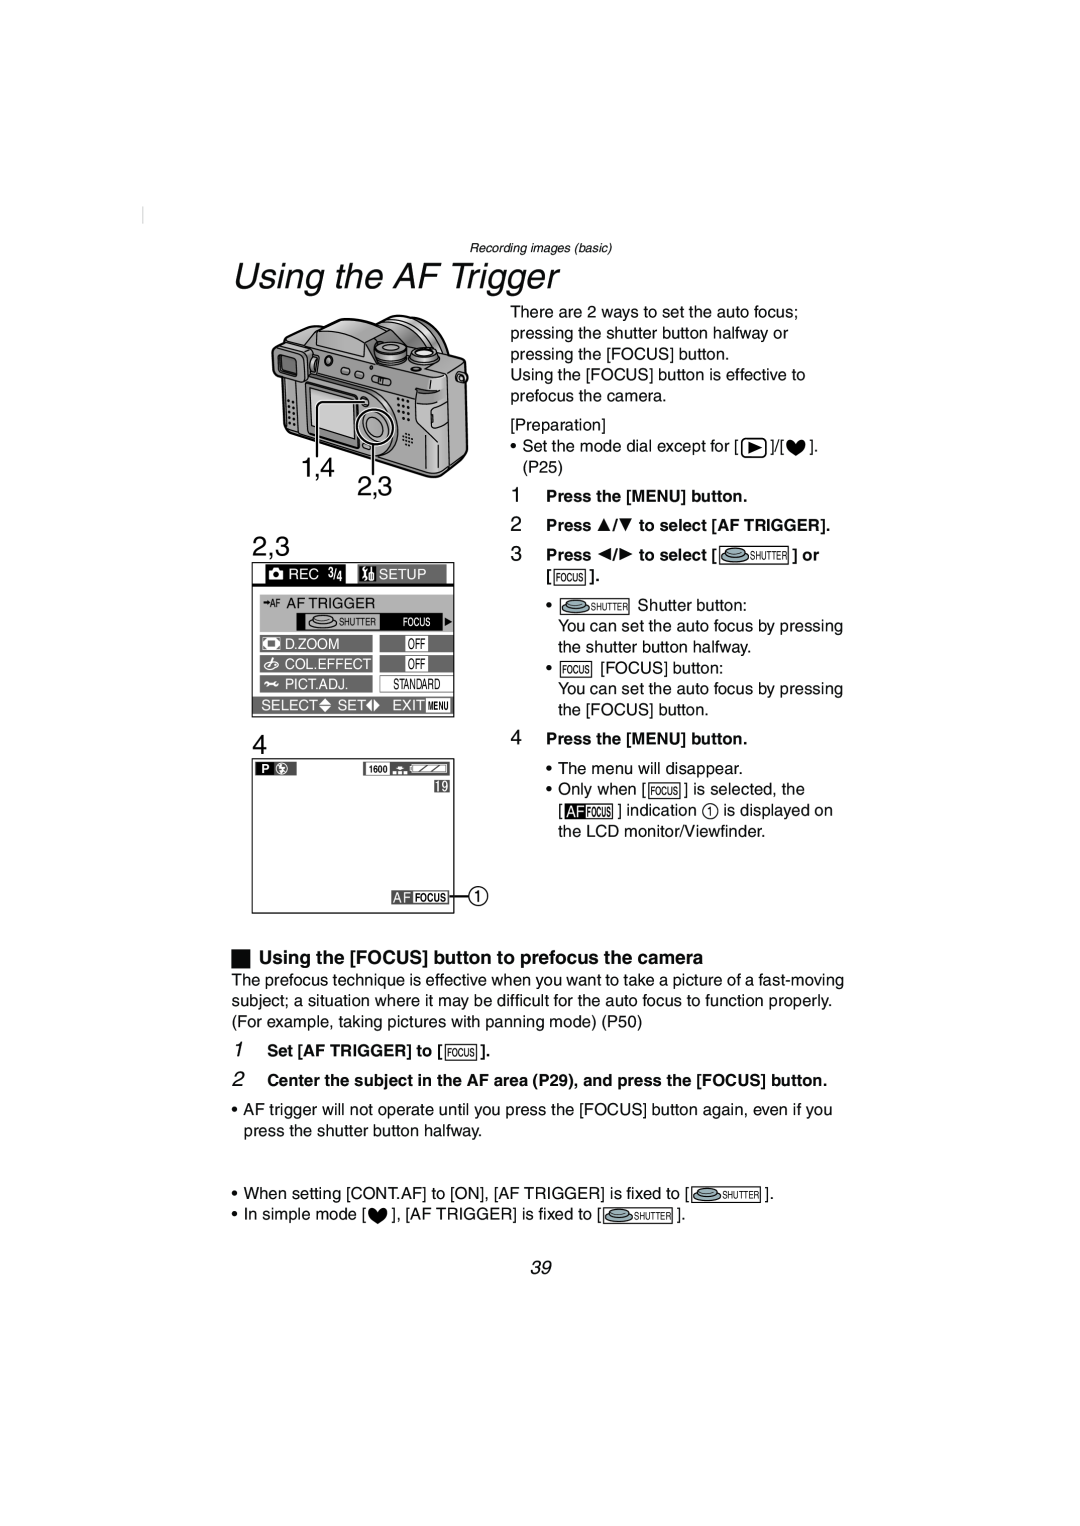 Panasonic DMC-FZ2PP Using the AF Trigger, Press the MENU button 2 Press 3/4 to select AF TRIGGER, Set AF TRIGGER to 